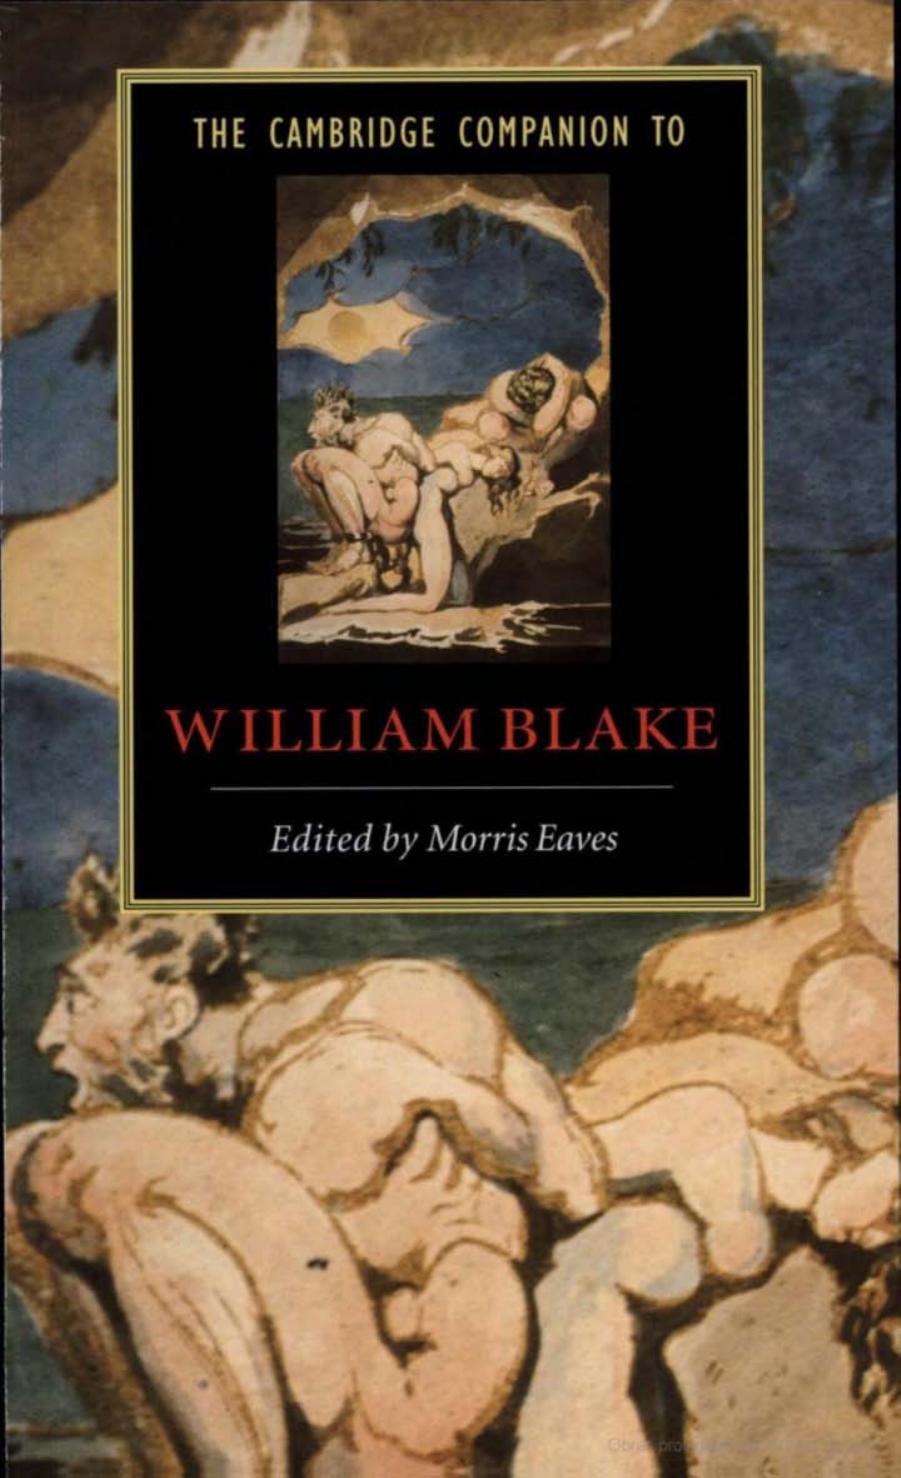 The Cambridge Companion to William Blake